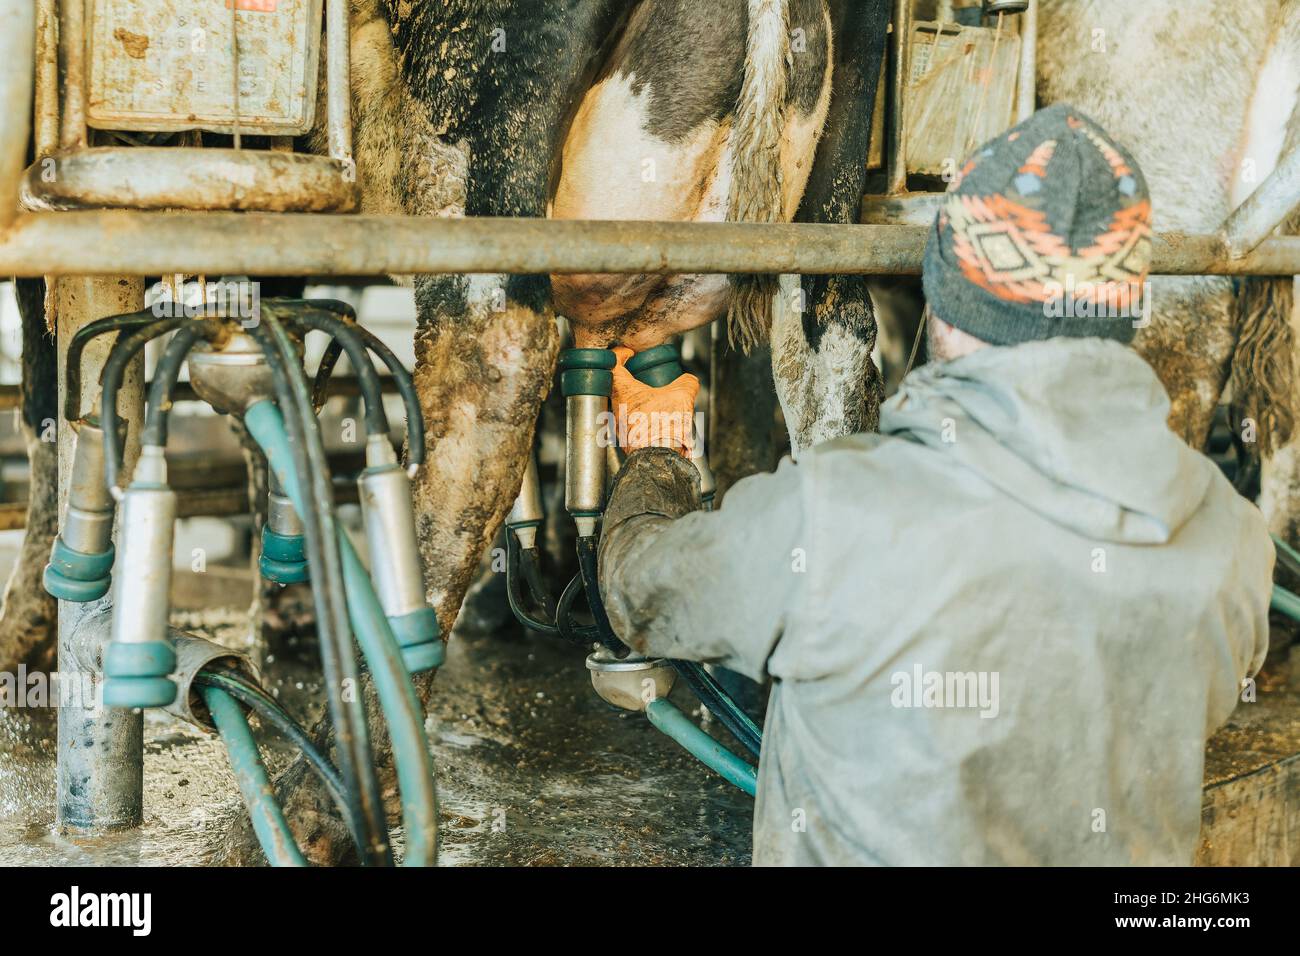 homme sur son dos dans des vêtements de travail mettant des tasses de trayons sur une vache Banque D'Images